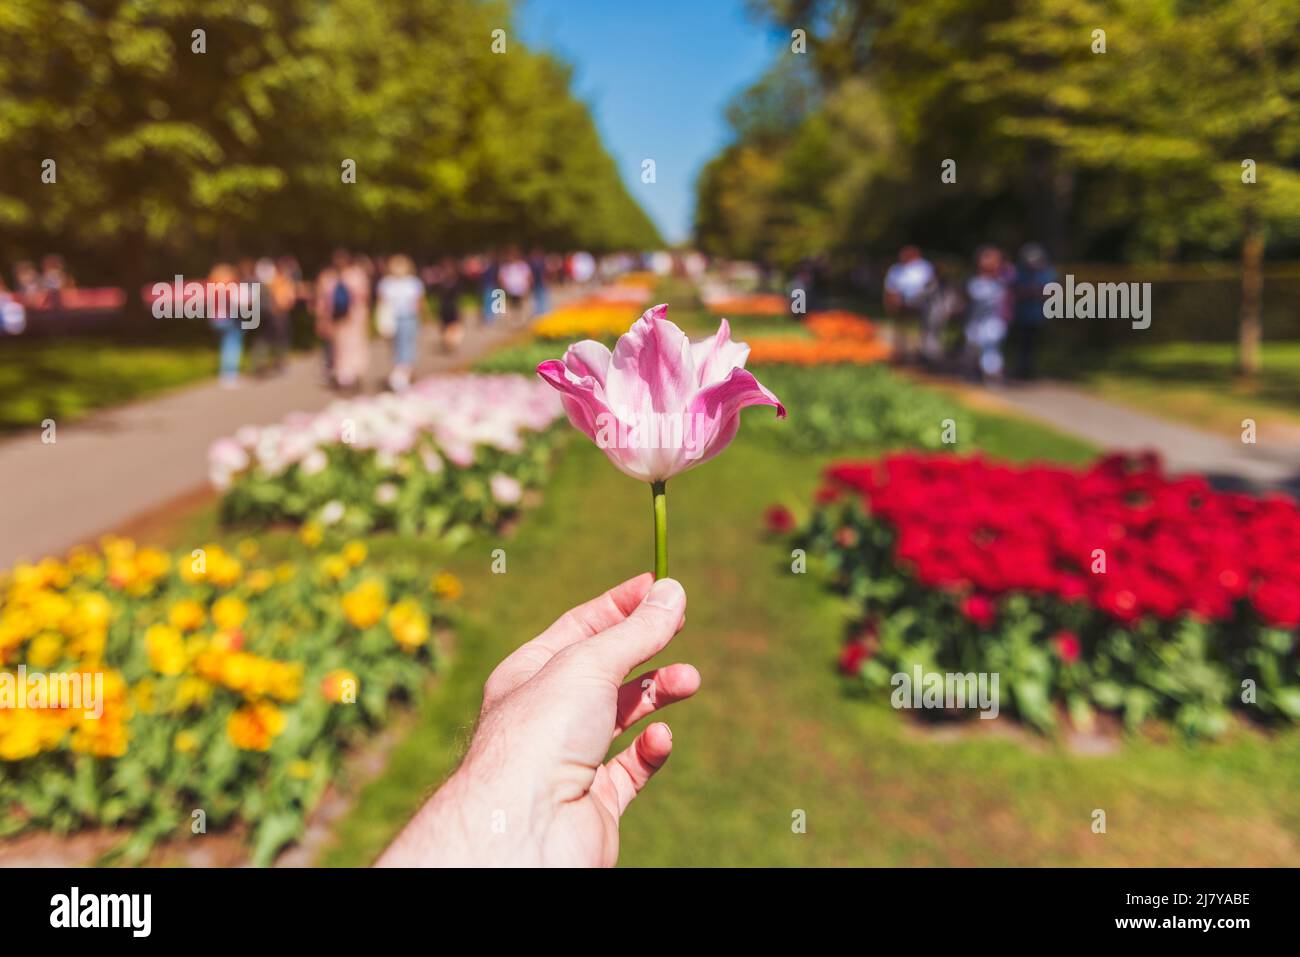 Perspectiva en primera persona en la mano masculina sosteniendo un tulipán en los jardines de Keukenhof en Lisse los Países Bajos, el foco estaba en el primer plano. Foto de stock